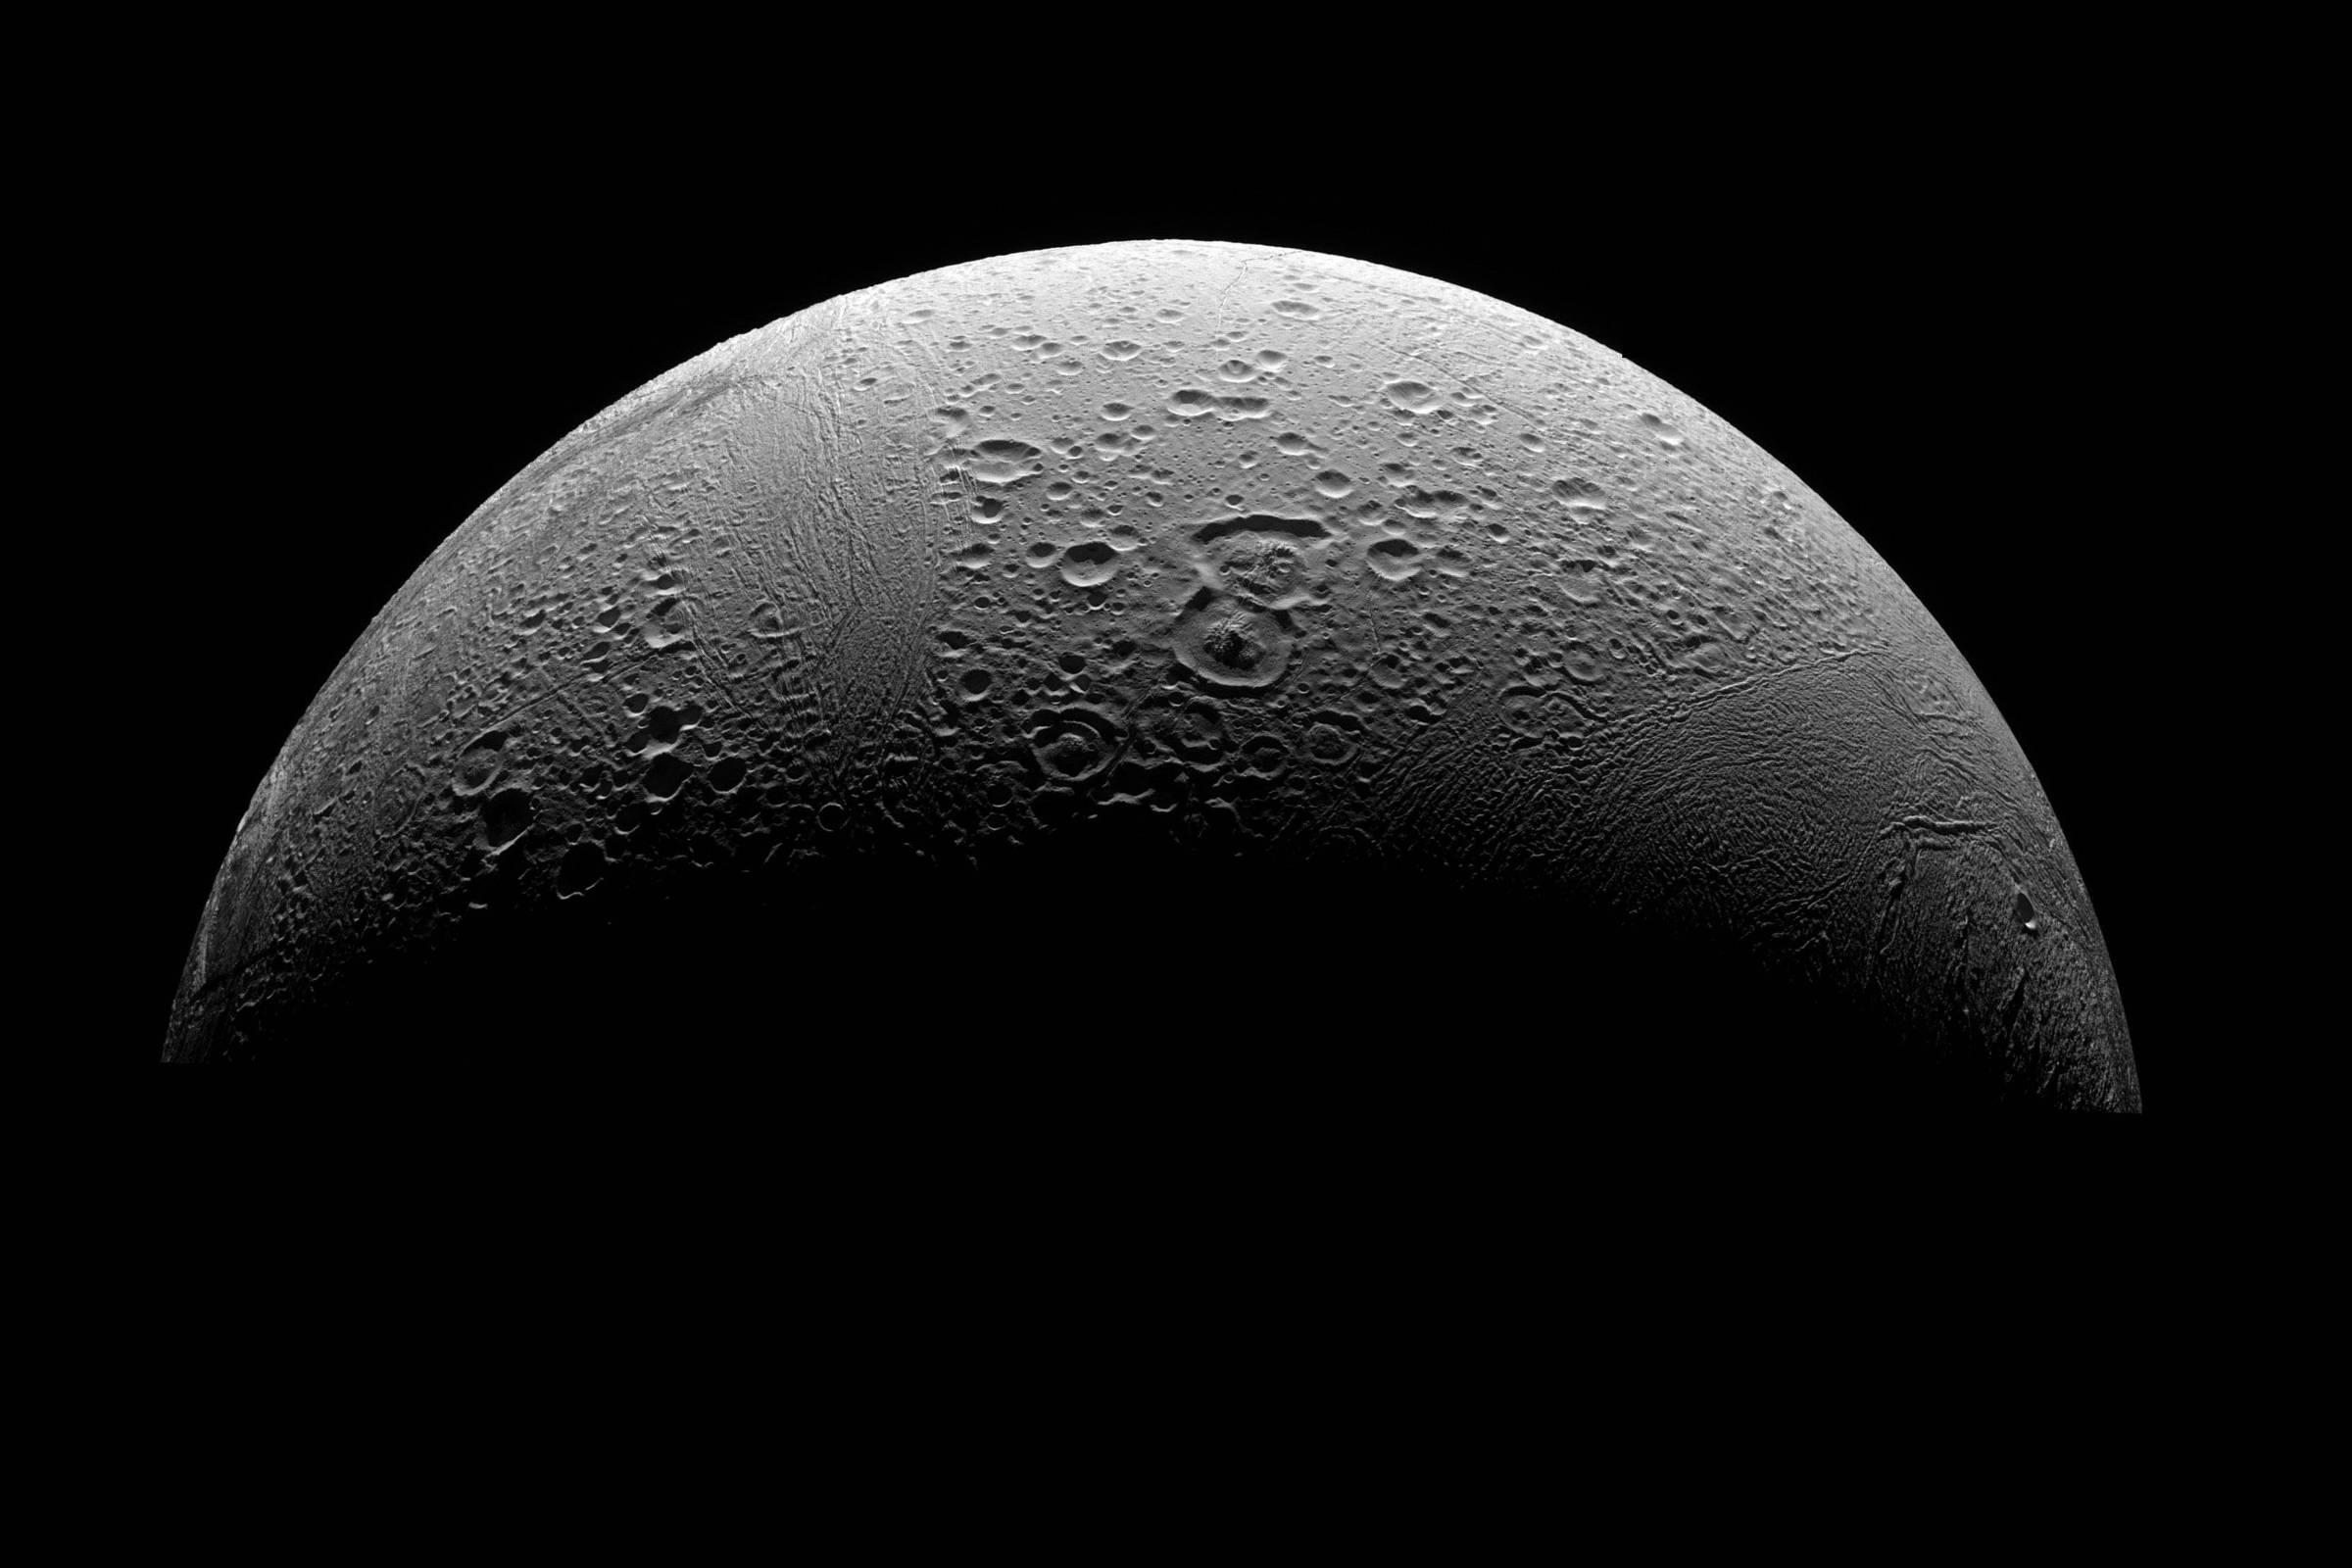 Astronomia: O oceano de Encélado – Mensageiro Sideral